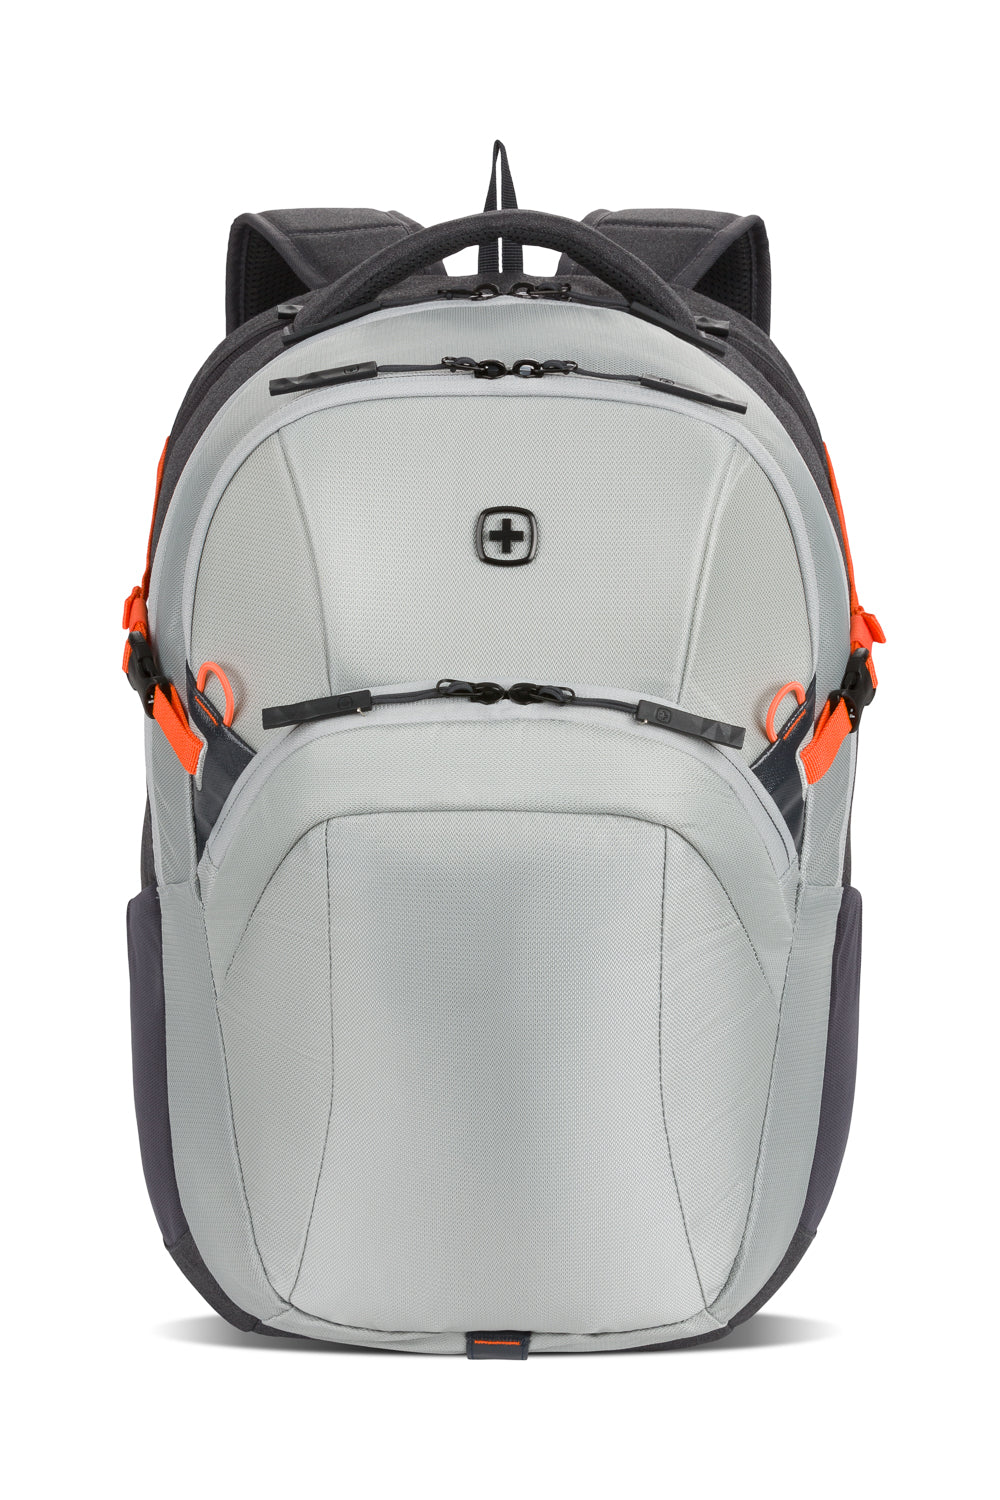 SwissGear 8169 16” Laptop Backpack